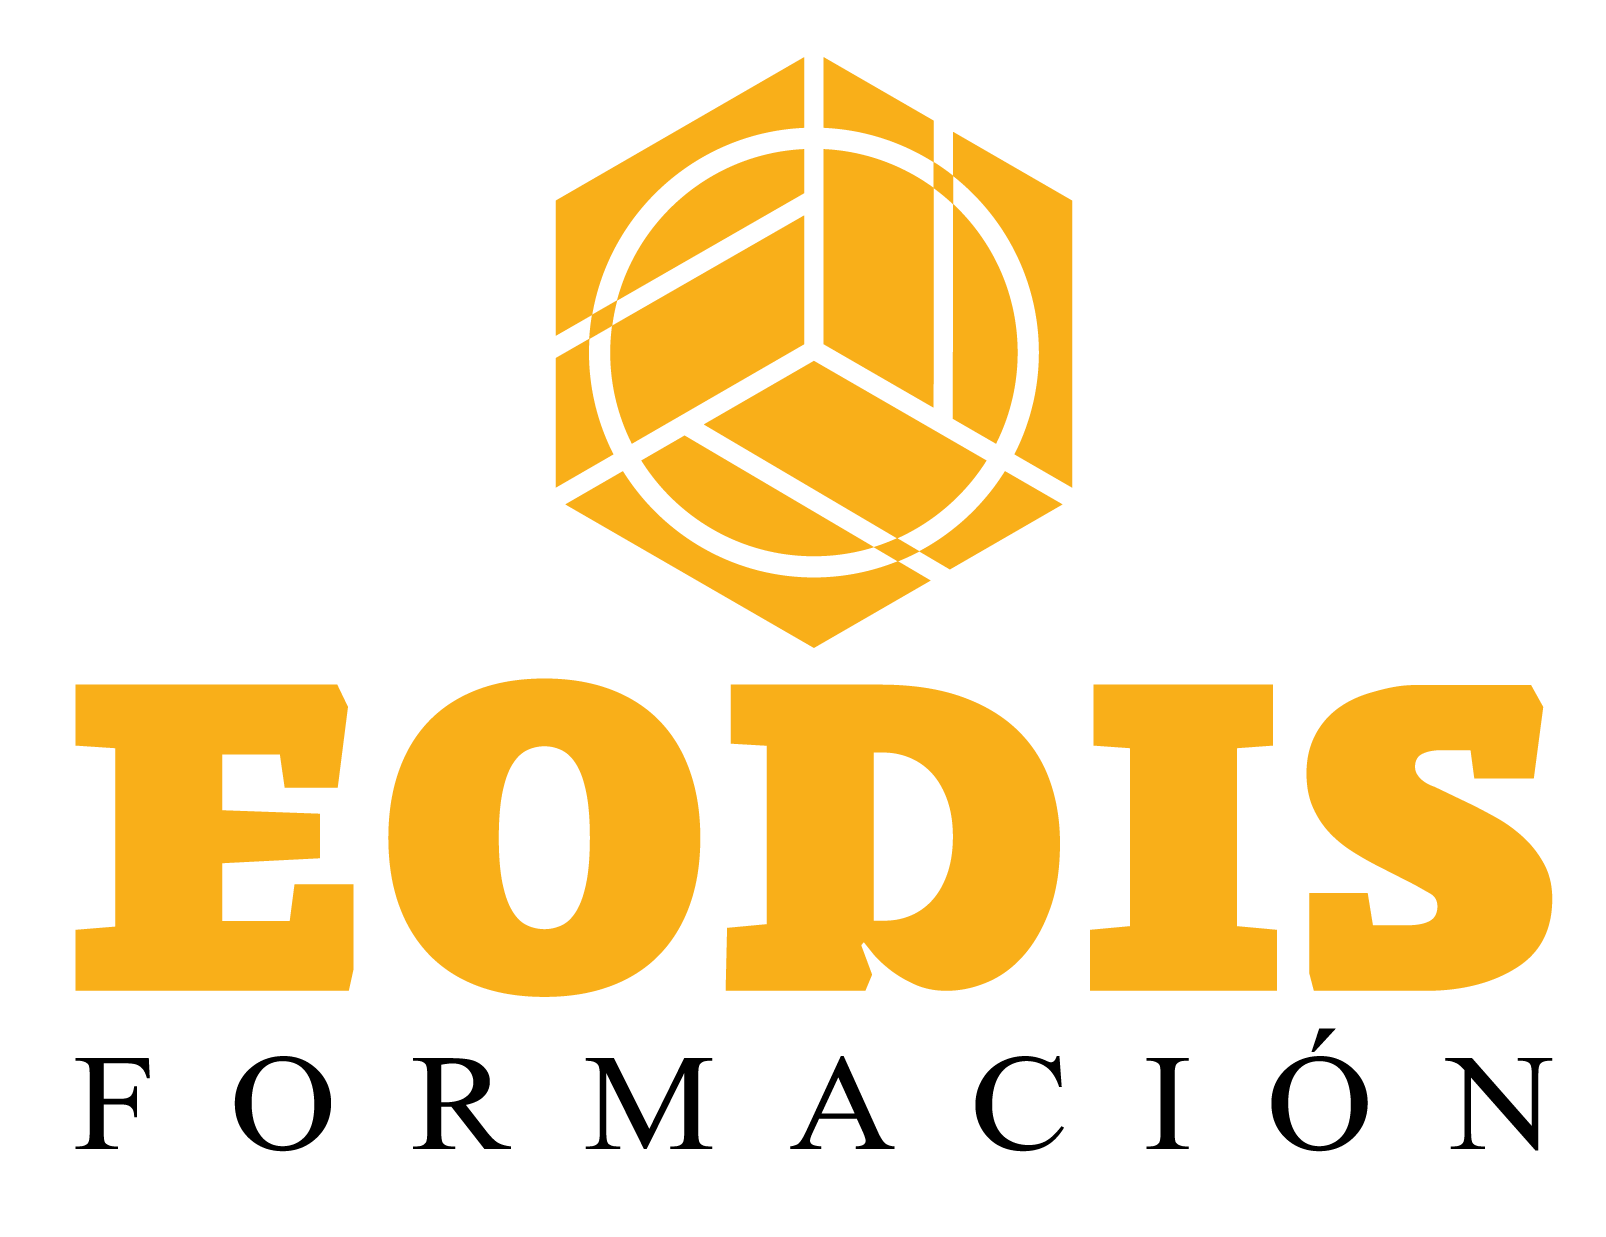 EODIS